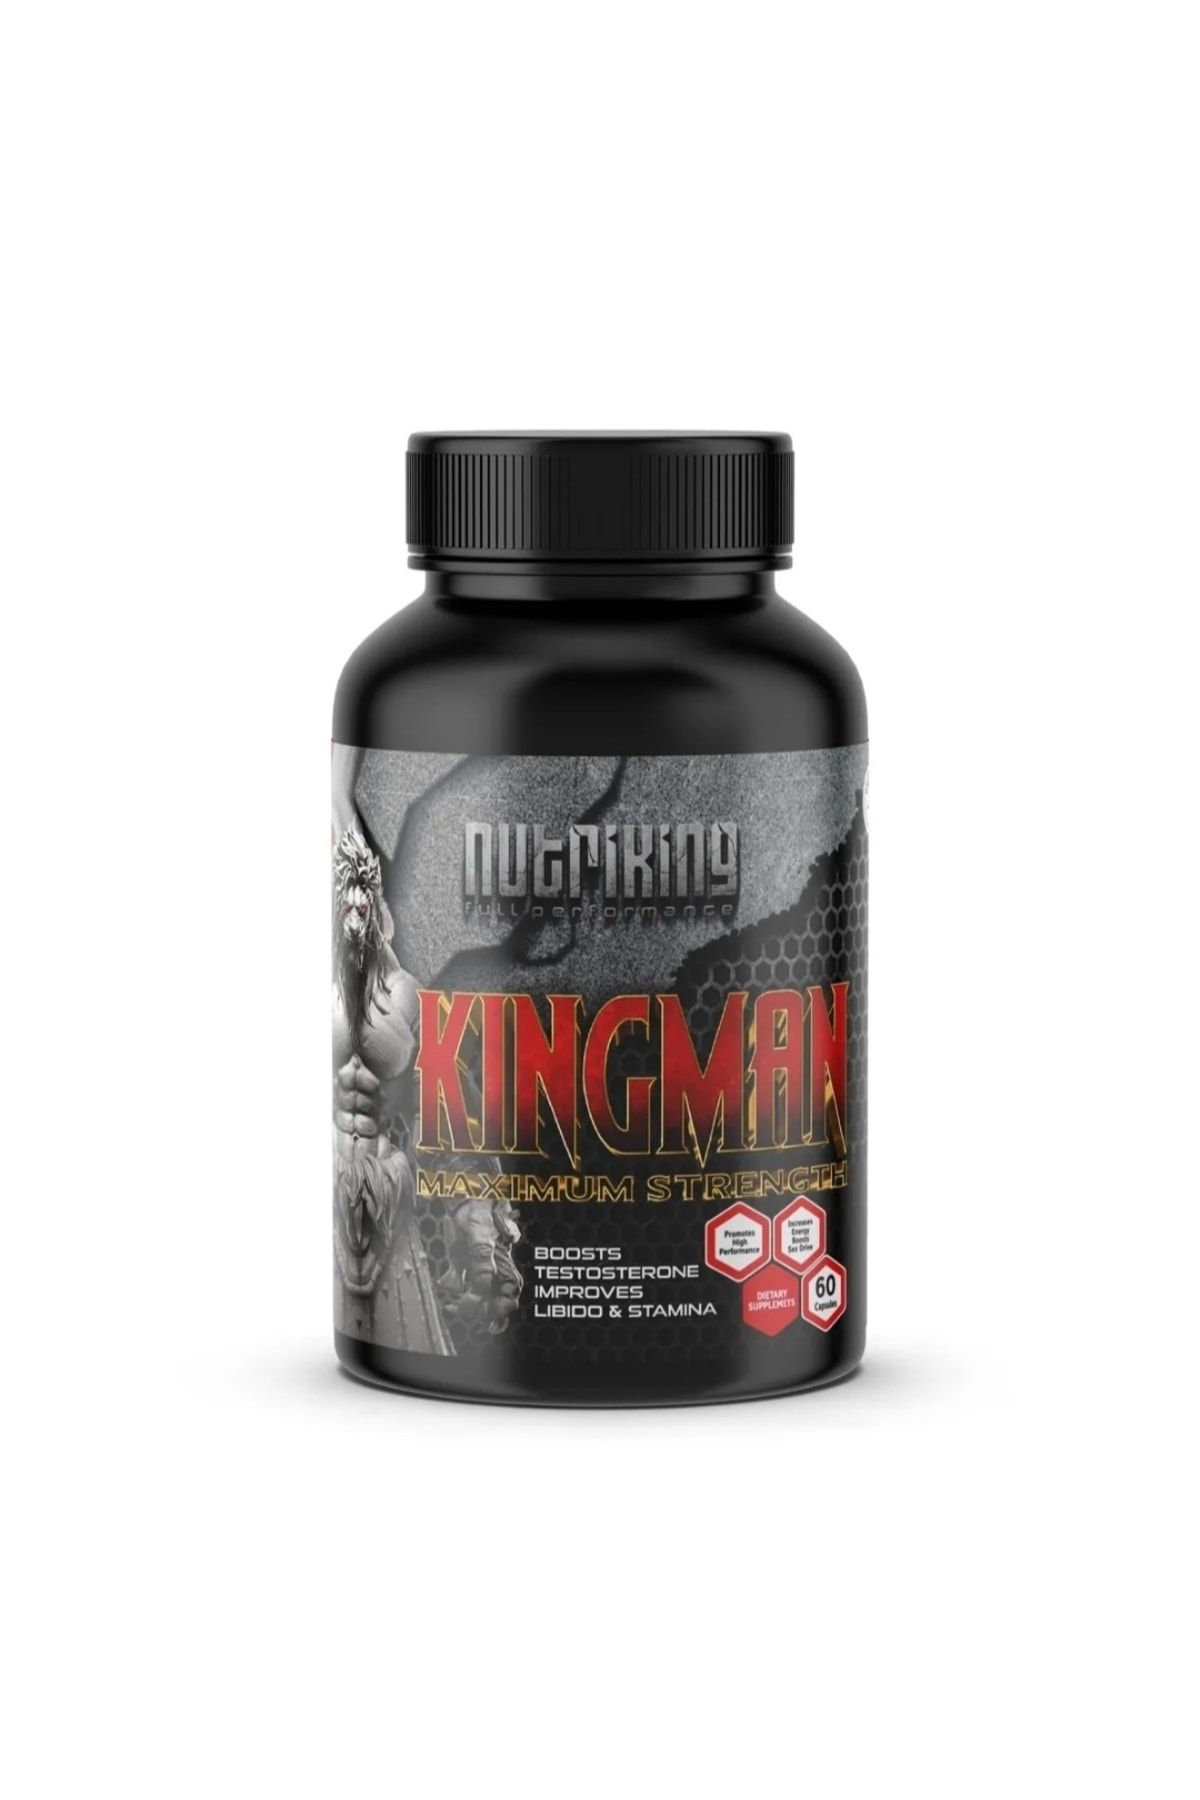 Nutriking Kingman 60 Kapsül